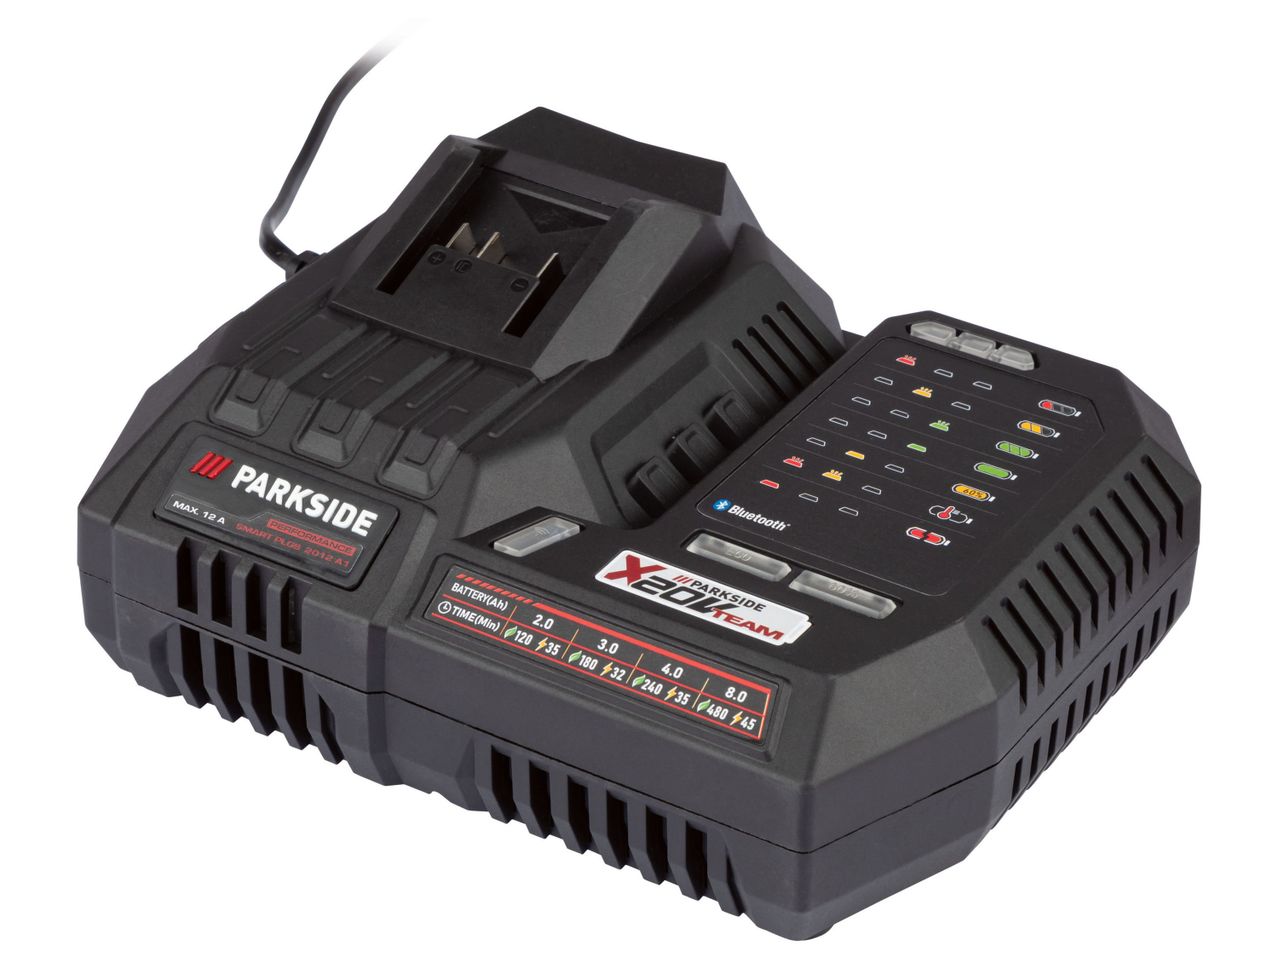 Ver empliada: Parkside® Carregador de bateria Smart 20V 12A Parkside - Imagem 1